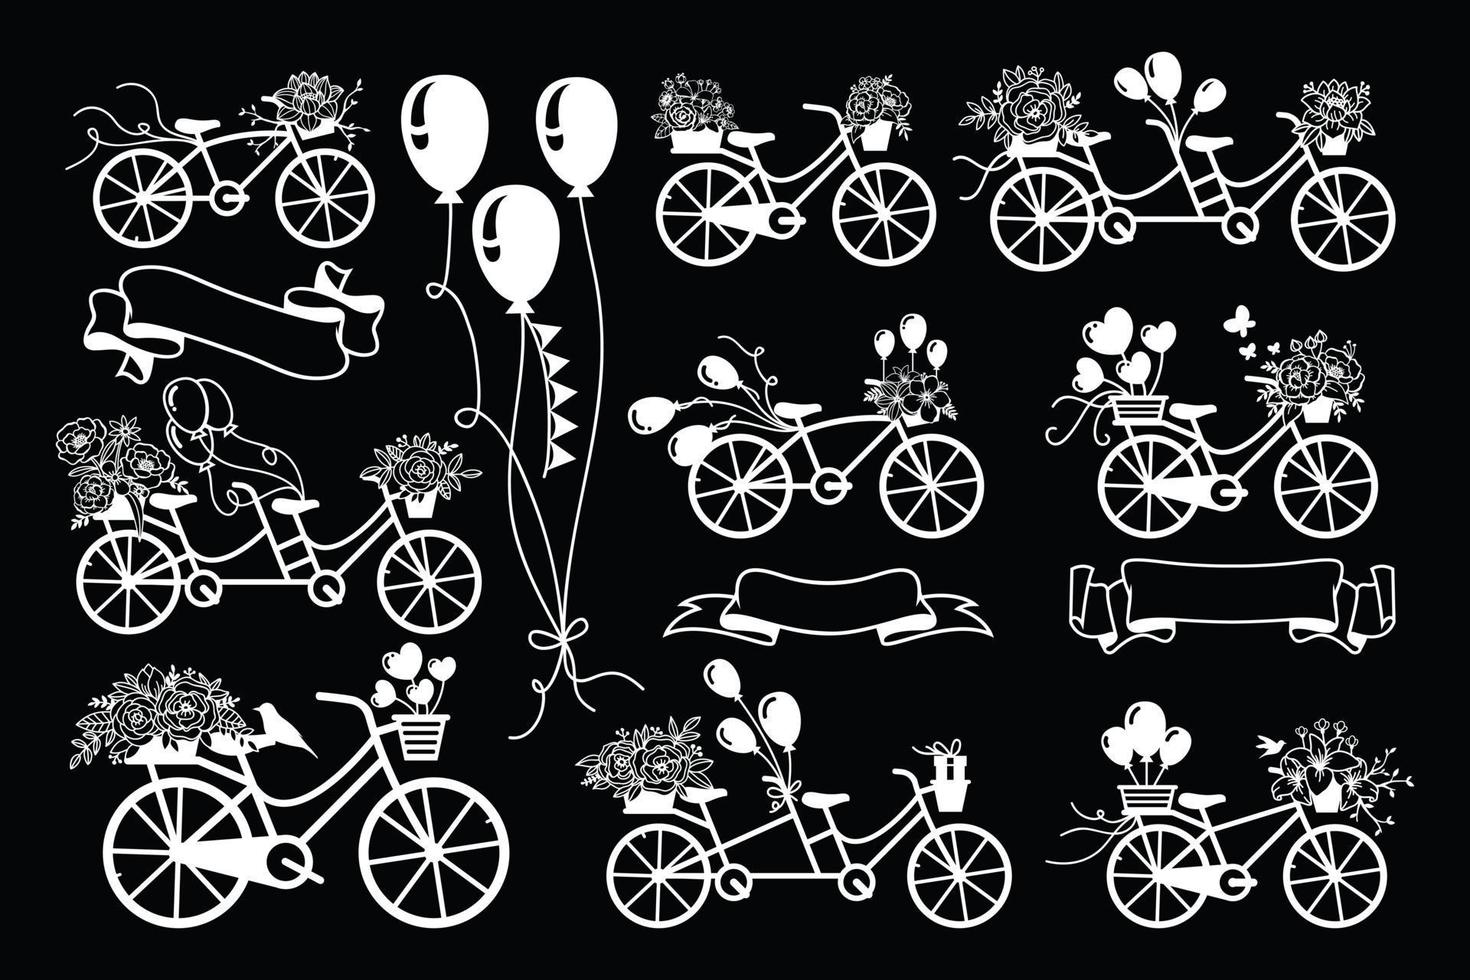 bicicleta vintage com coleção floral vetor